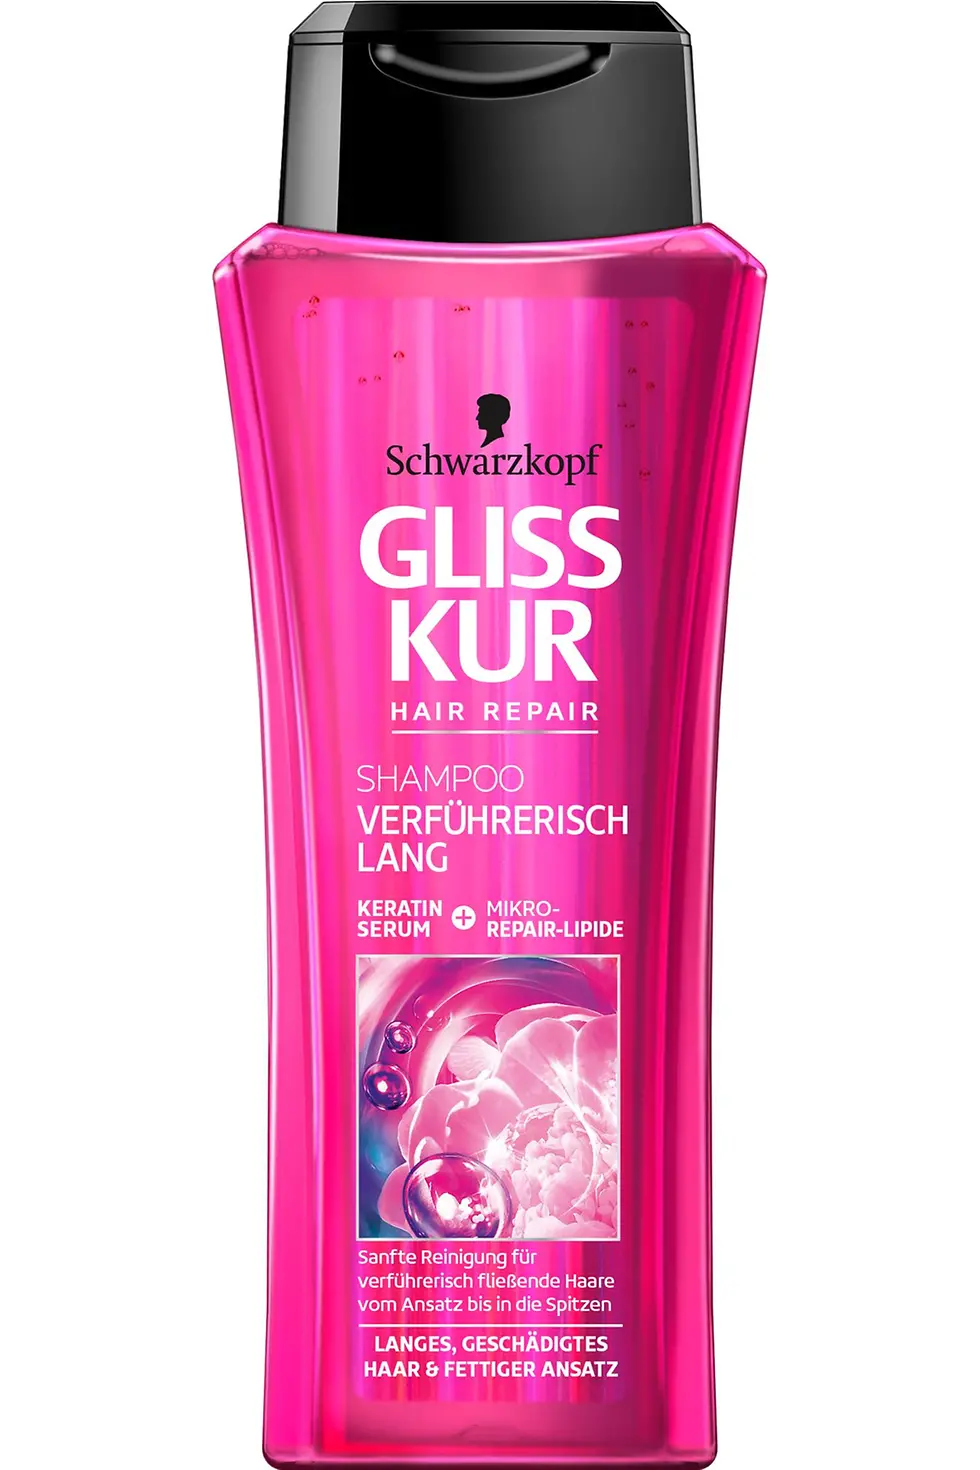 Gliss Kur Verführerisch Lang Shampoo